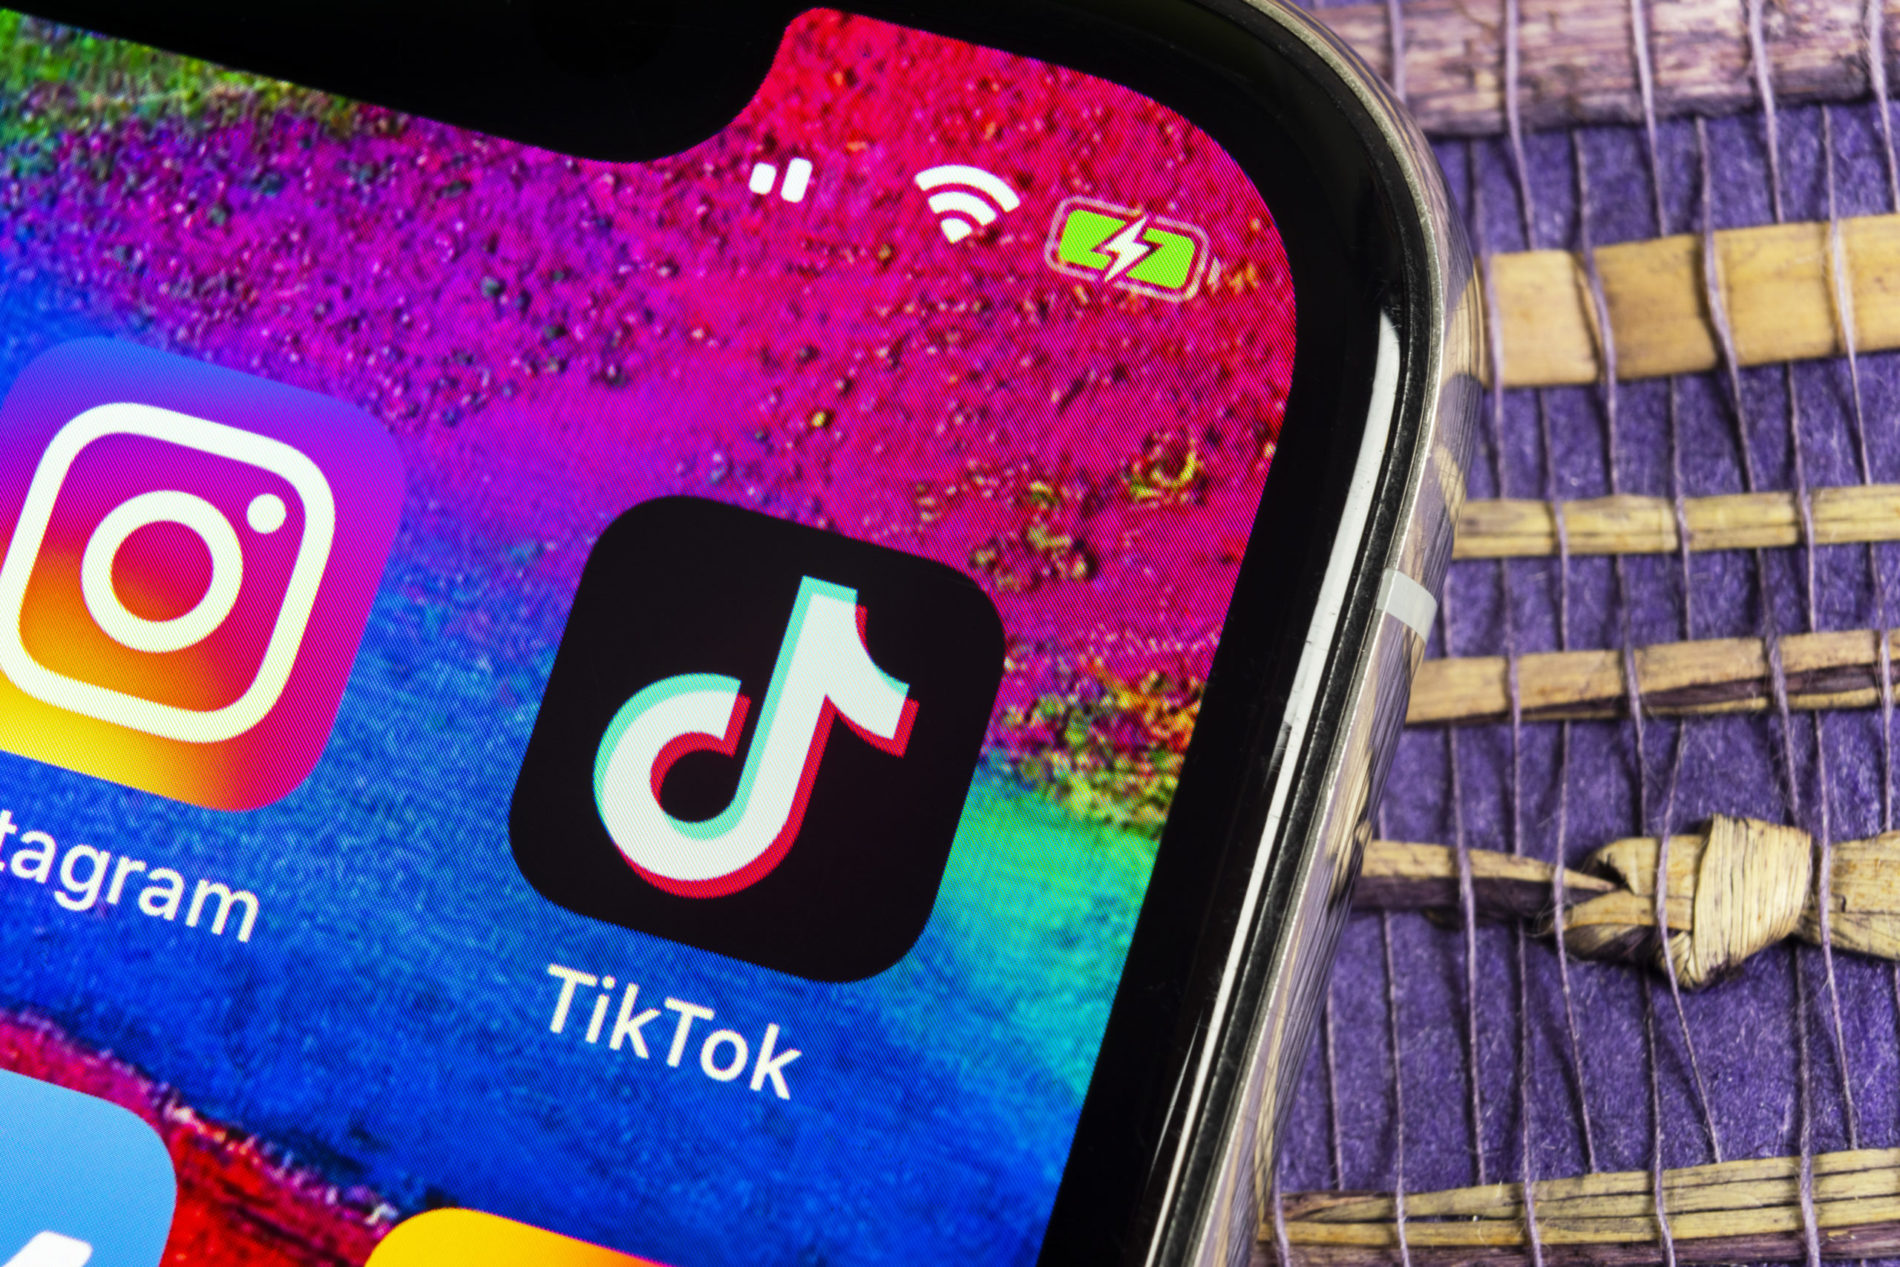 TikTok – mạng xã hội nắm trong tay ‘quyền sinh quyền sát’: Quyết định bài hát, video hay xu hướng nào sẽ viral, biến người vô danh thành ngôi sao trong một nốt nhạc’ - Ảnh 3.